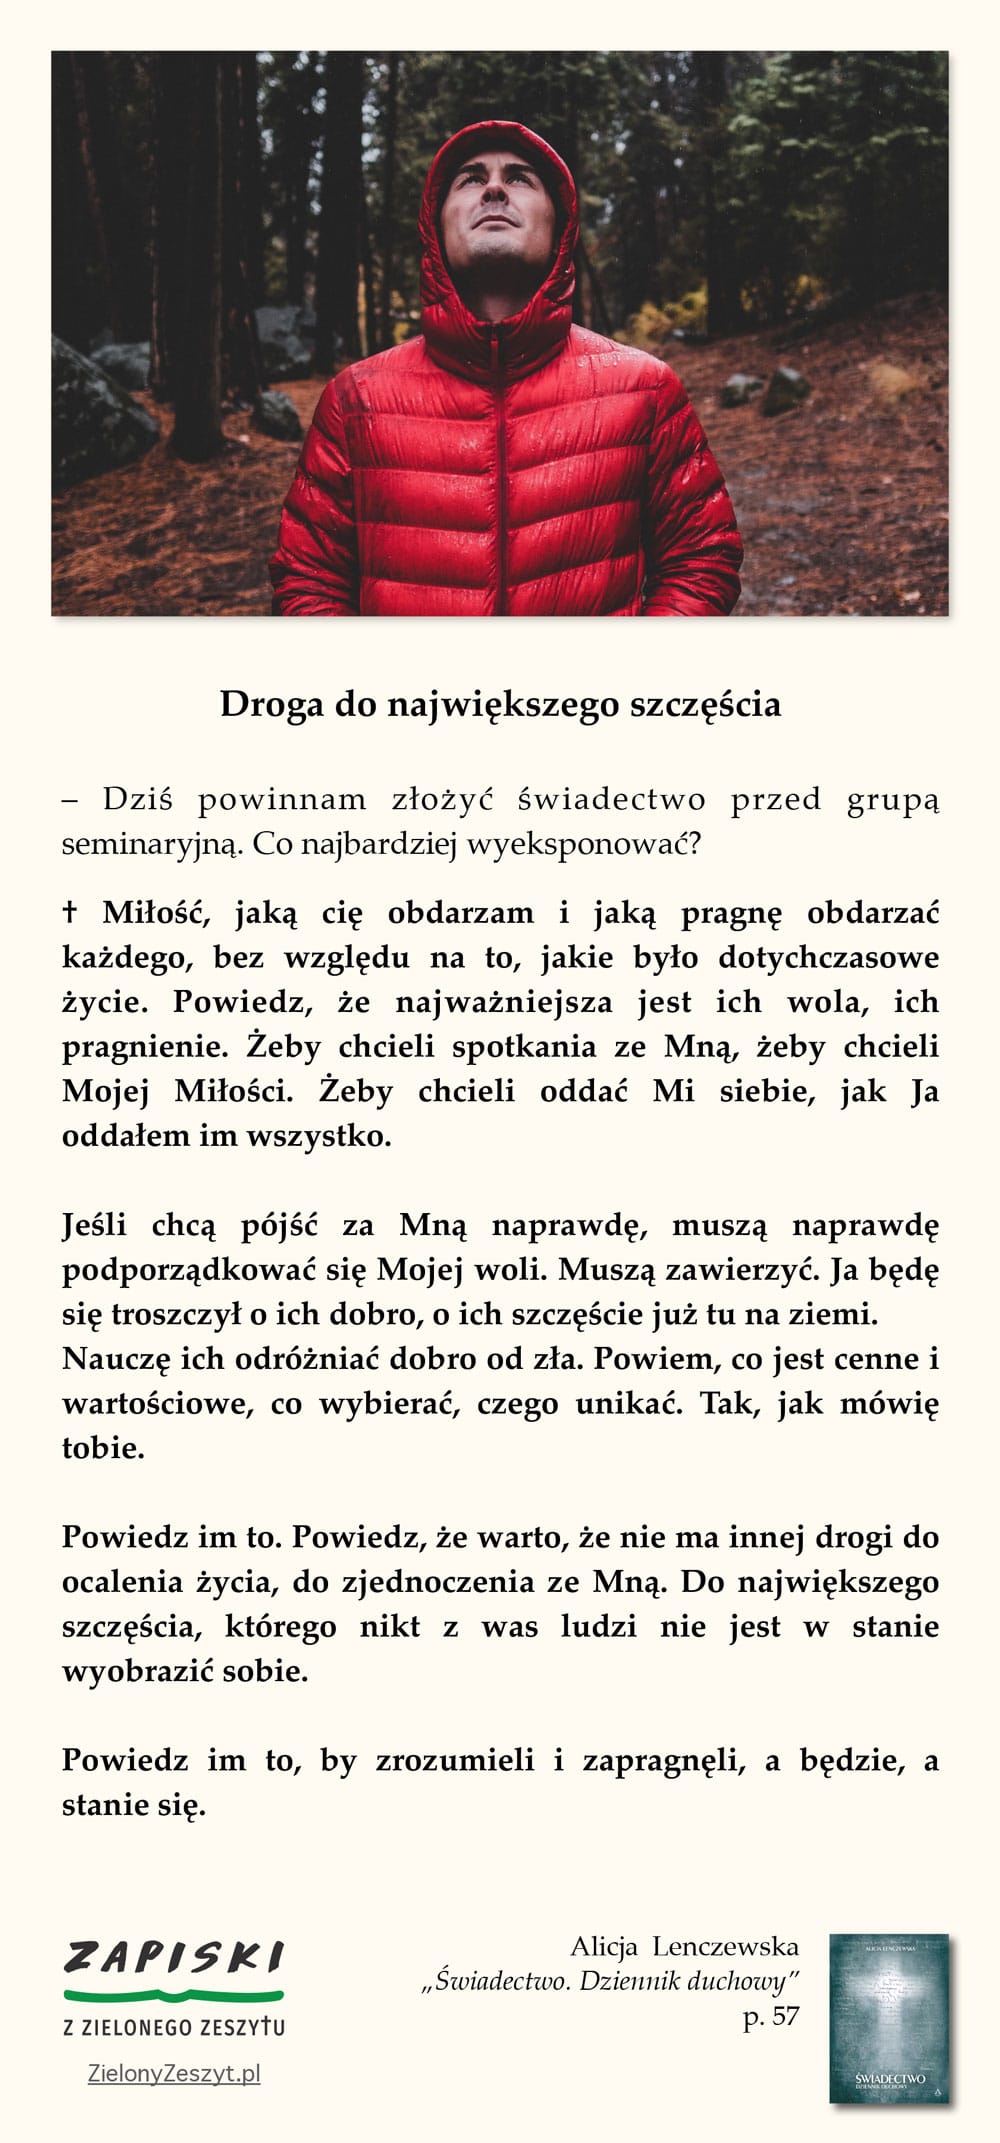 Alicja Lenczewska, „Świadectwo. Dziennik duchowy”, p. 71 (Droga do największego szczęścia)